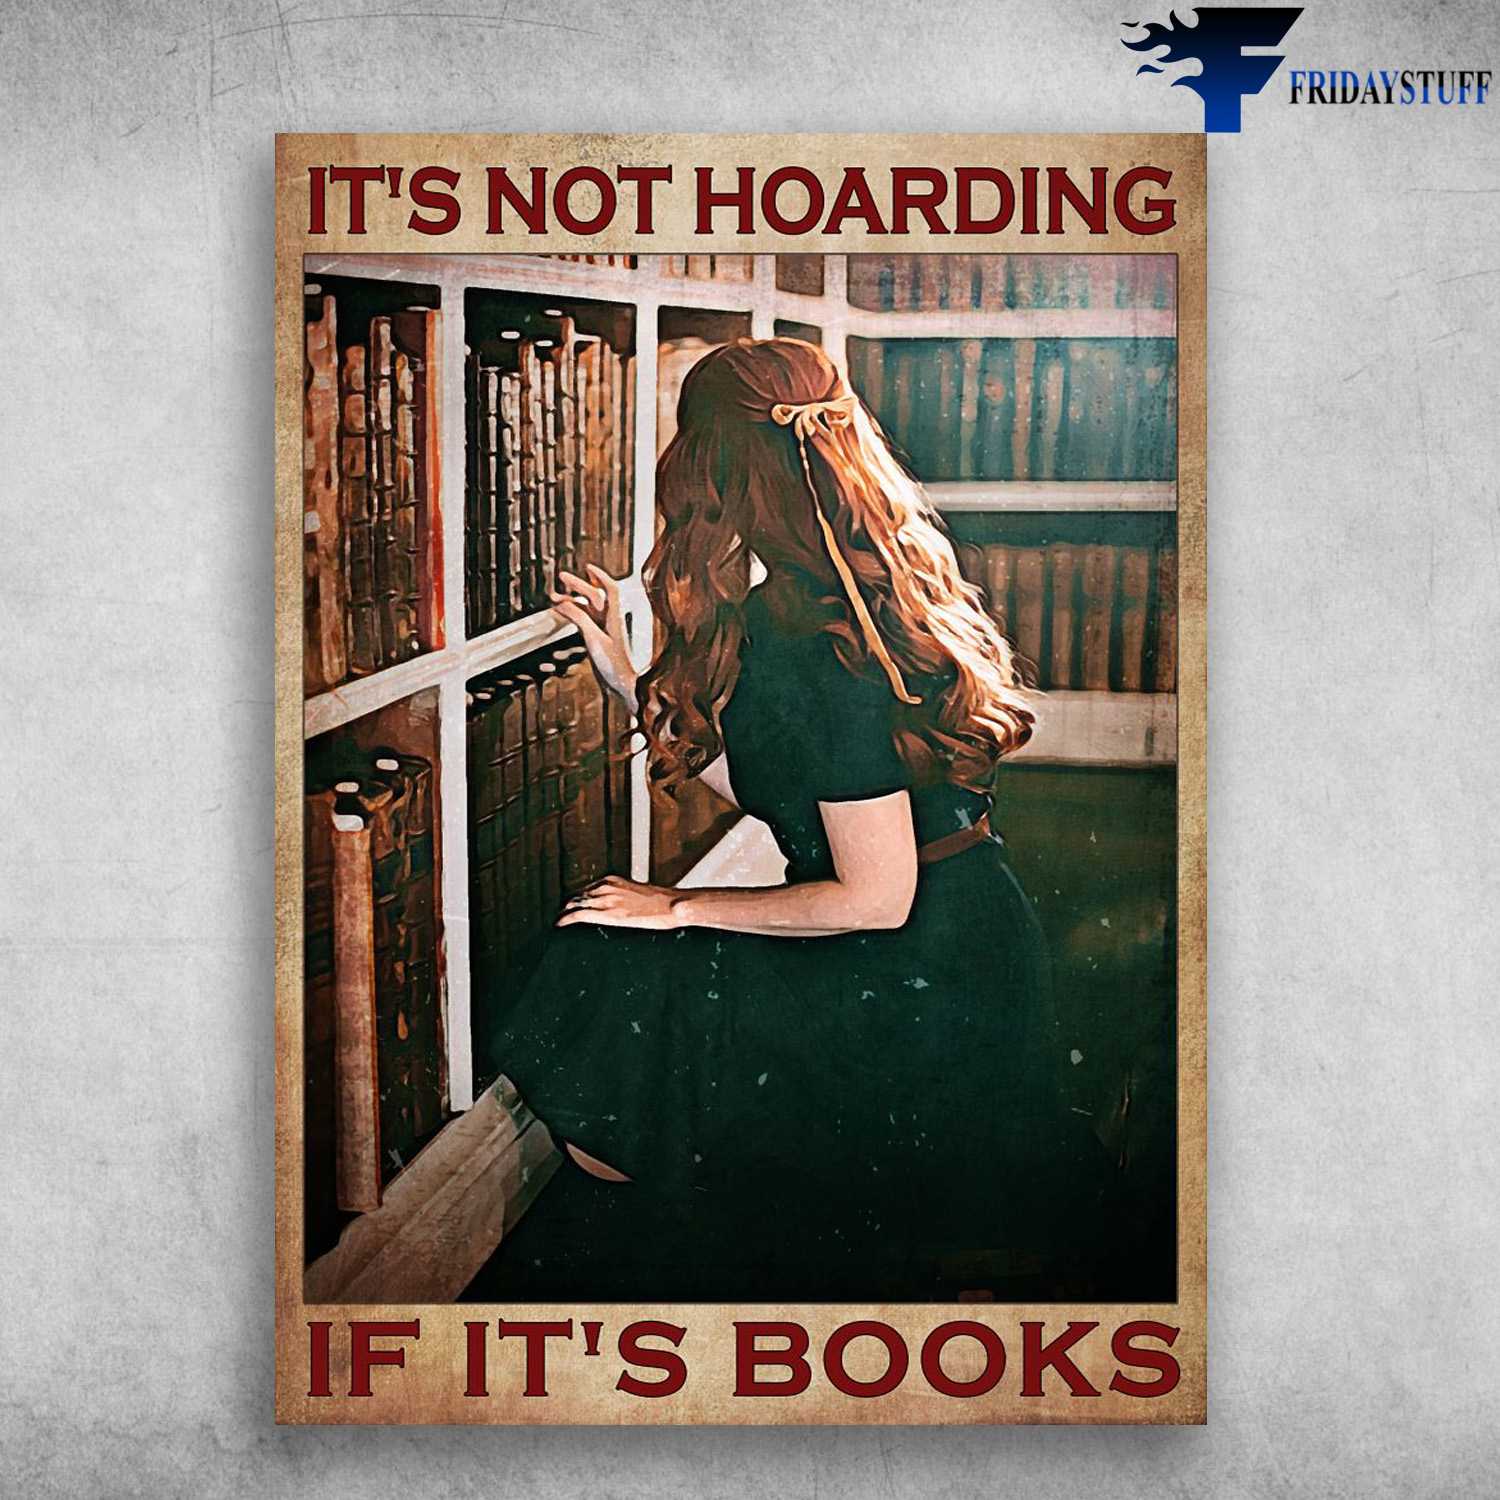 Girl Loves Book, Reading Books - It's Not Hoarding, If It's Books, Book Lover